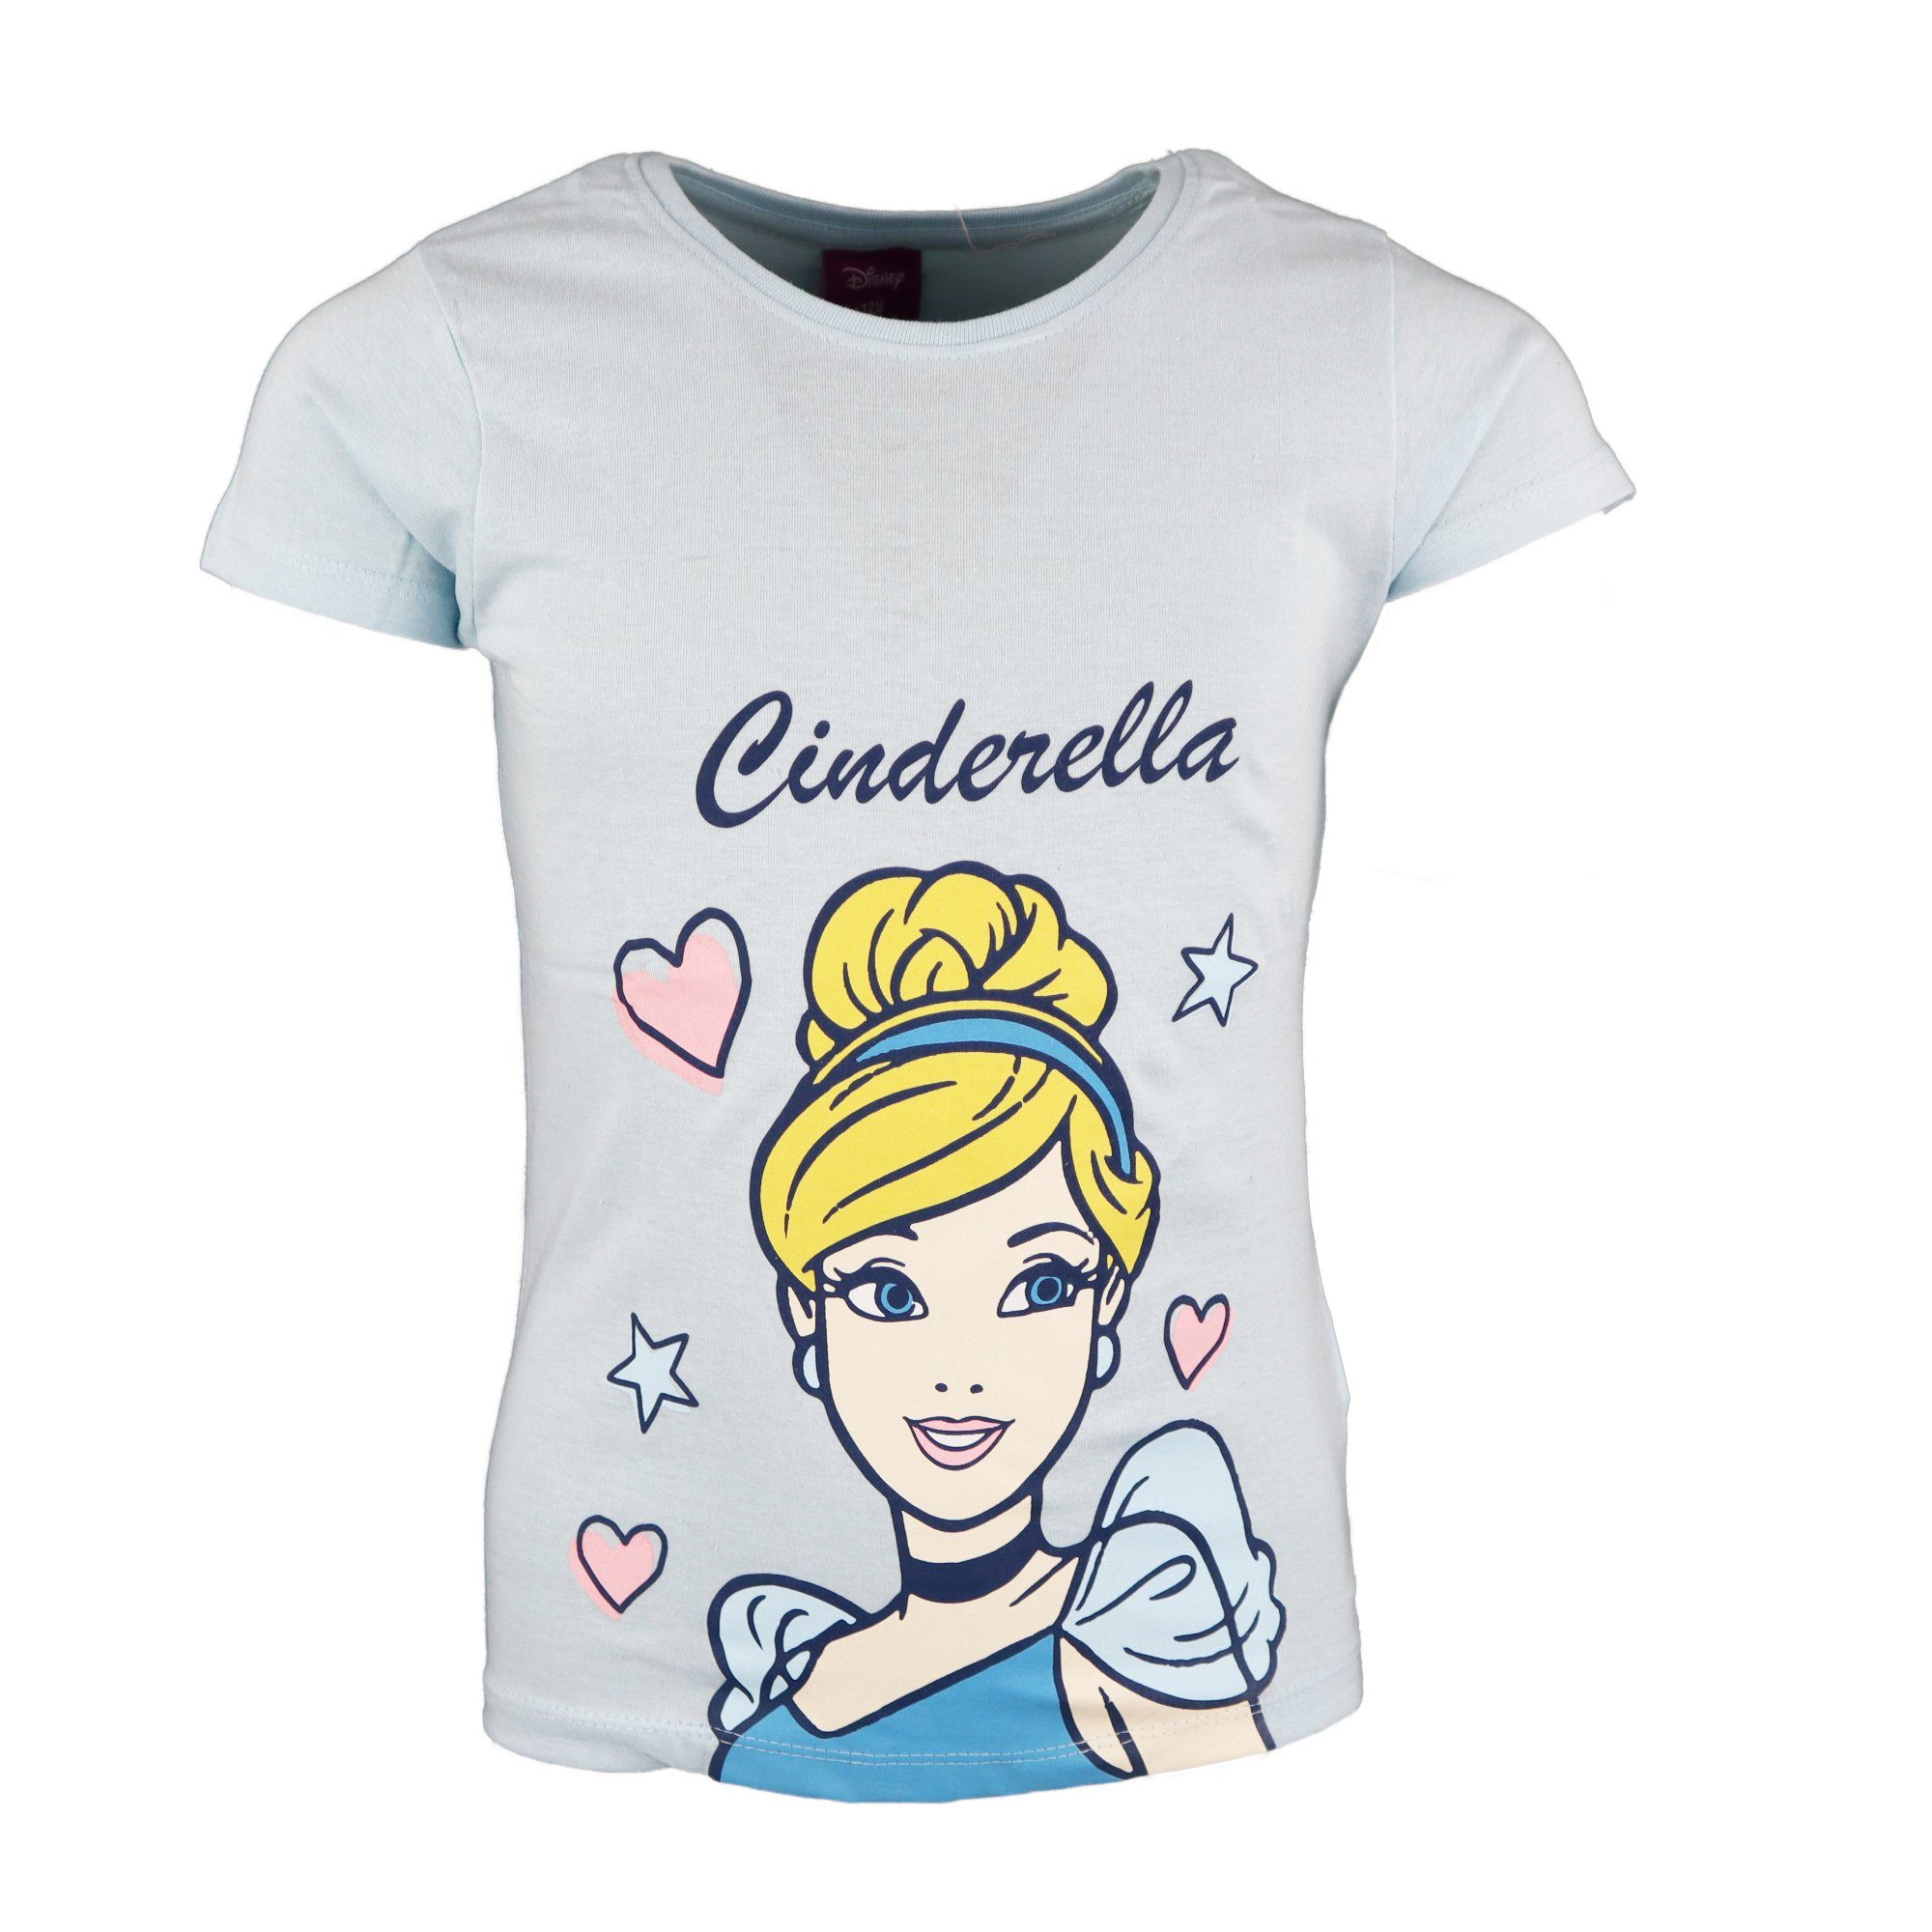 Disney Princess T-Shirt Cinderella Mädchen Kinder Shirt Gr. 98 bis 128, Baumwolle